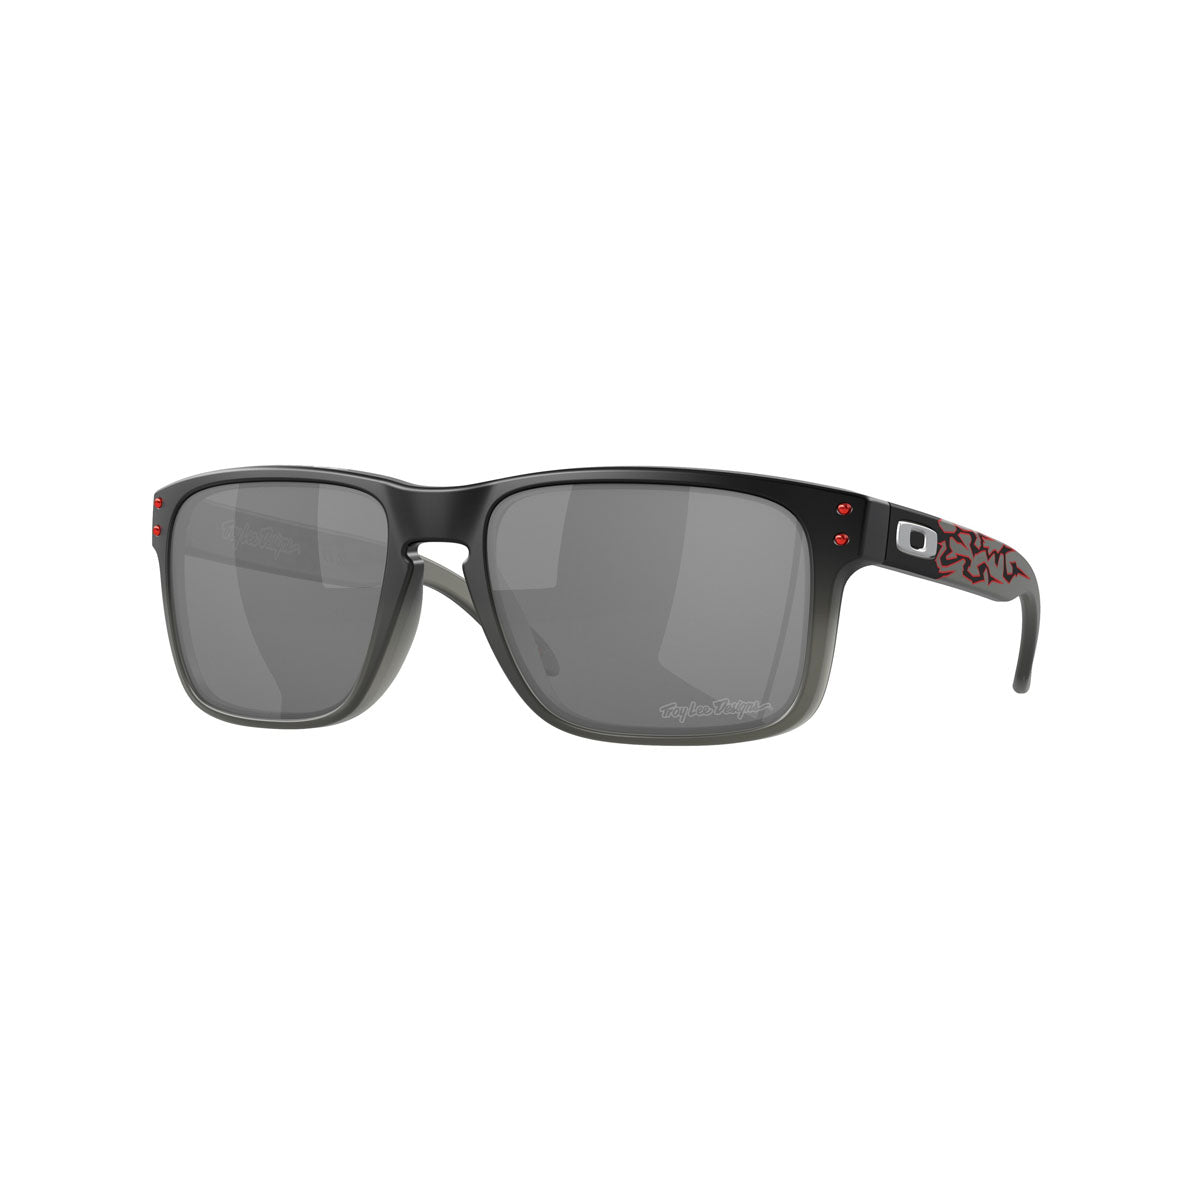 Oakley Holbrook Sunglasses - Troy Lee Designs Black Fade/Prizm Black